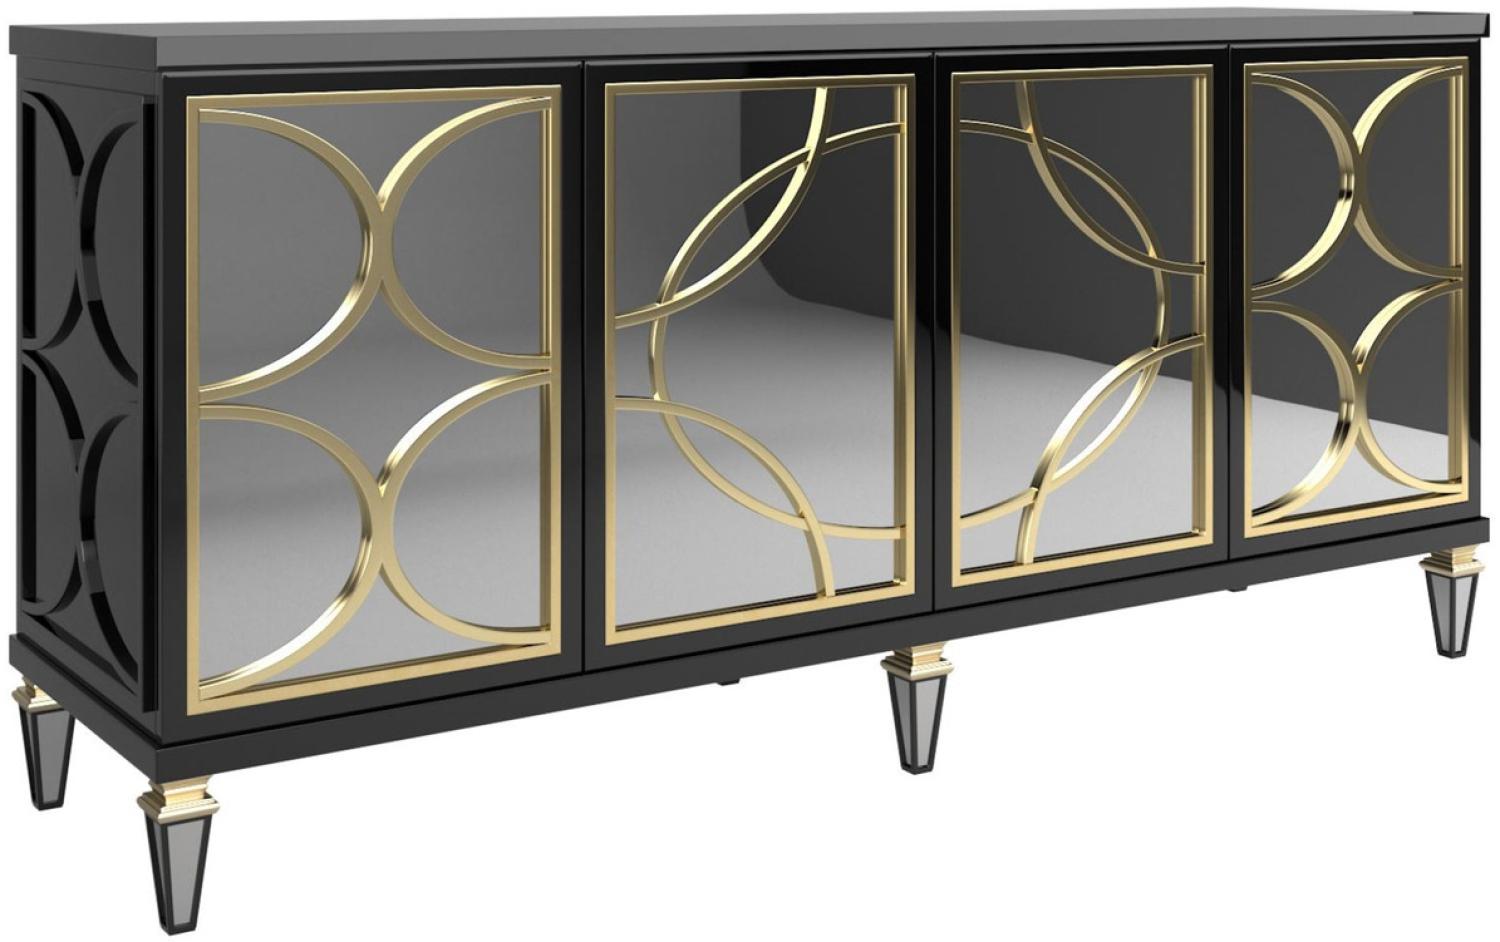 Casa Padrino Luxus Barock Sideboard Schwarz / Gold 220 x 55 x H. 105 cm - Prunkvoller Schrank mit 4 verspiegelten Türen - Barock Möbel Bild 1